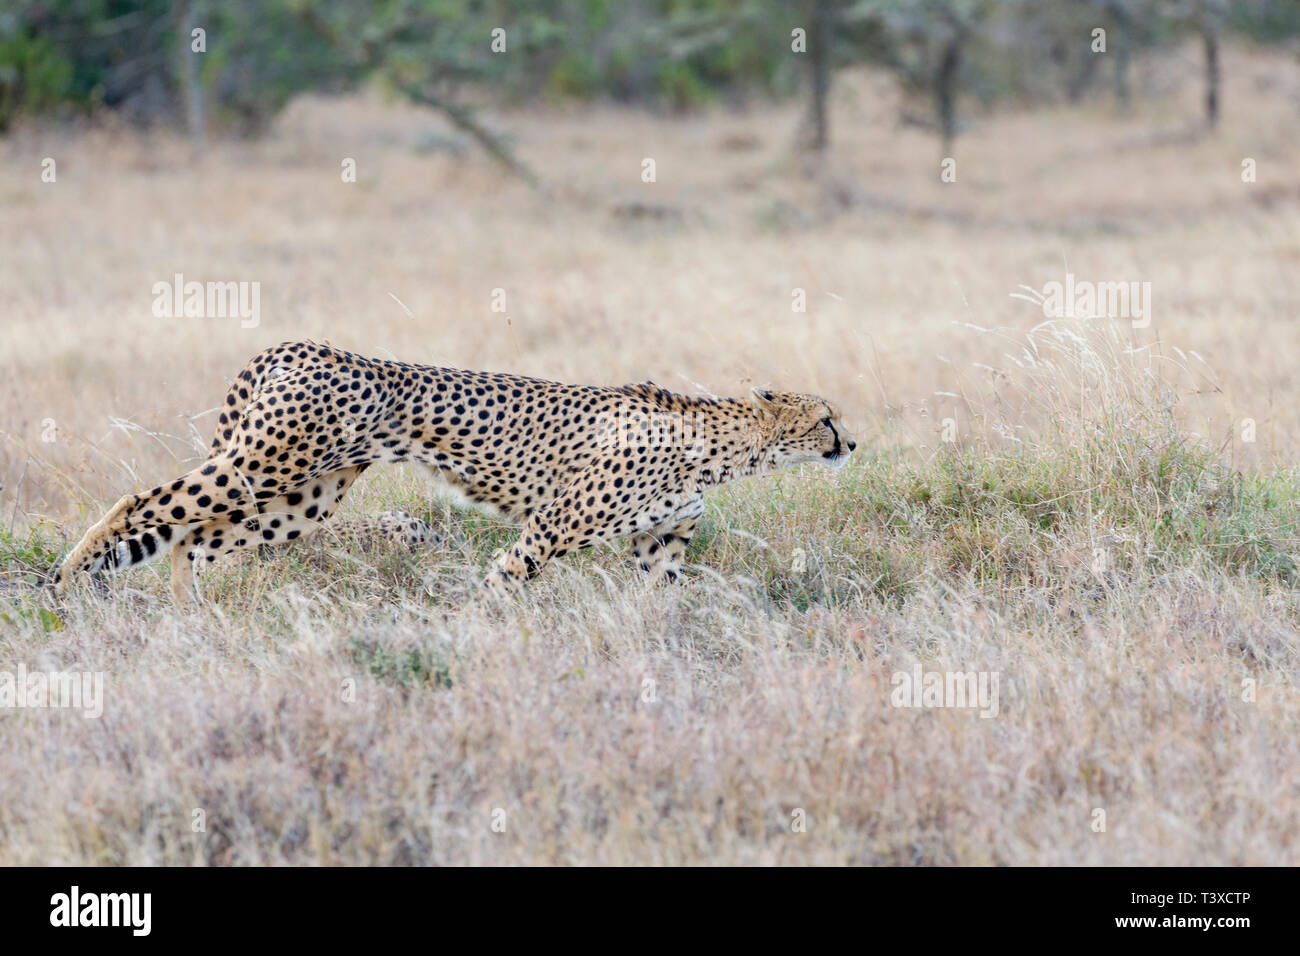 Un guépard femelle adulte dans la prairie ouverte, se déplaçant régulièrement, à partir de chasser, format Paysage, Ol Pejeta Conservancy, Laikipia, Kenya, Africa Banque D'Images